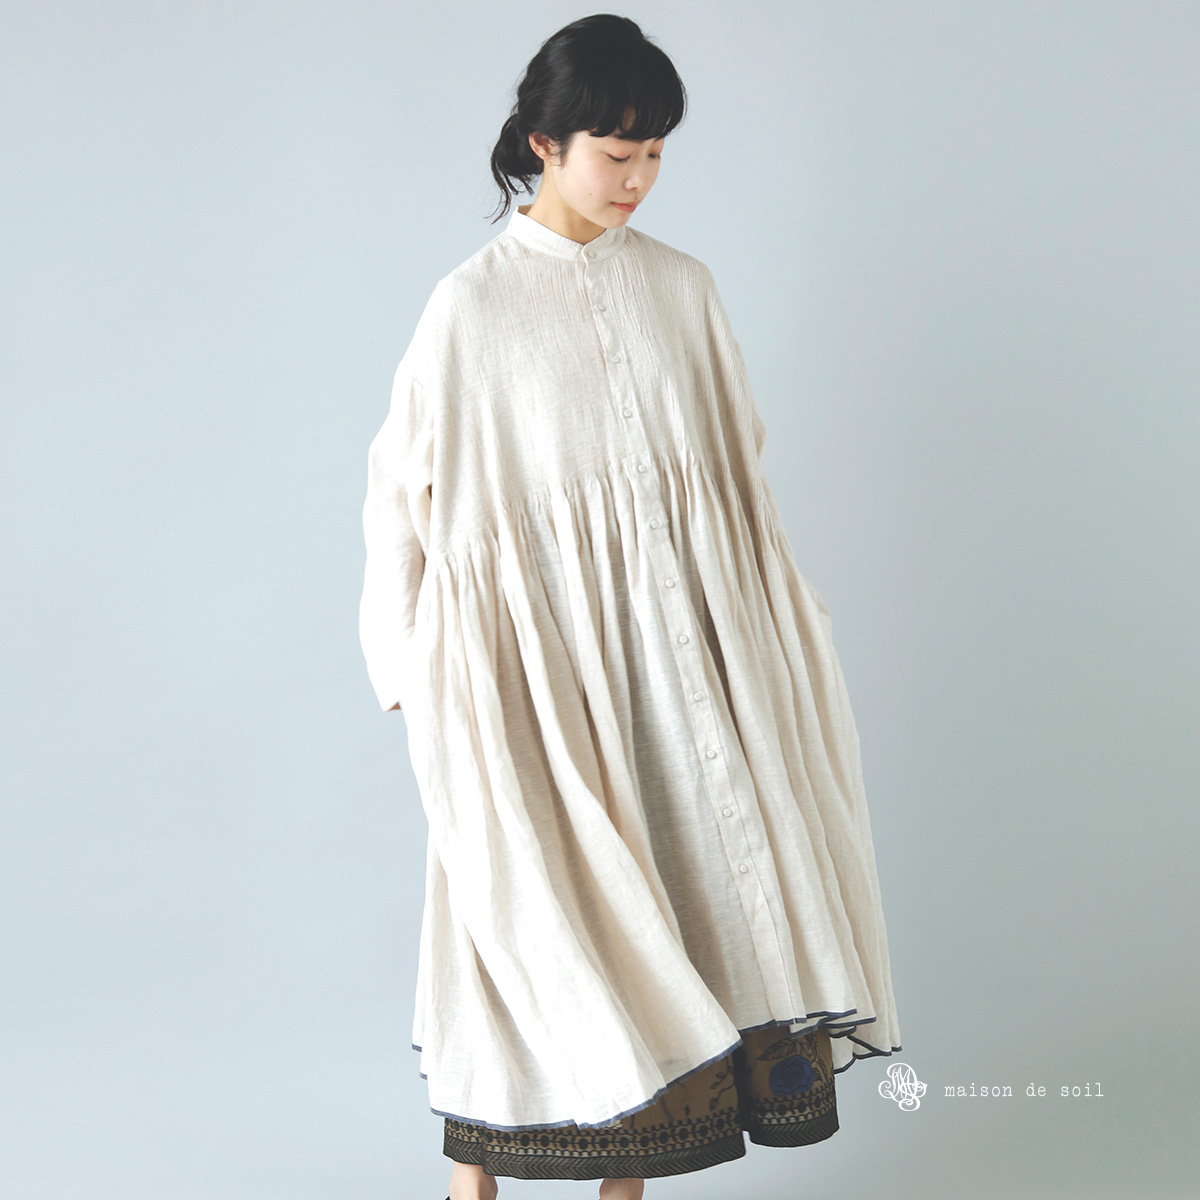 maison de soil(メゾン ド ソイル)リネンバンドカラーシャツドレス“Banded Shirt Dress With Mini Pintuck” inmds22005